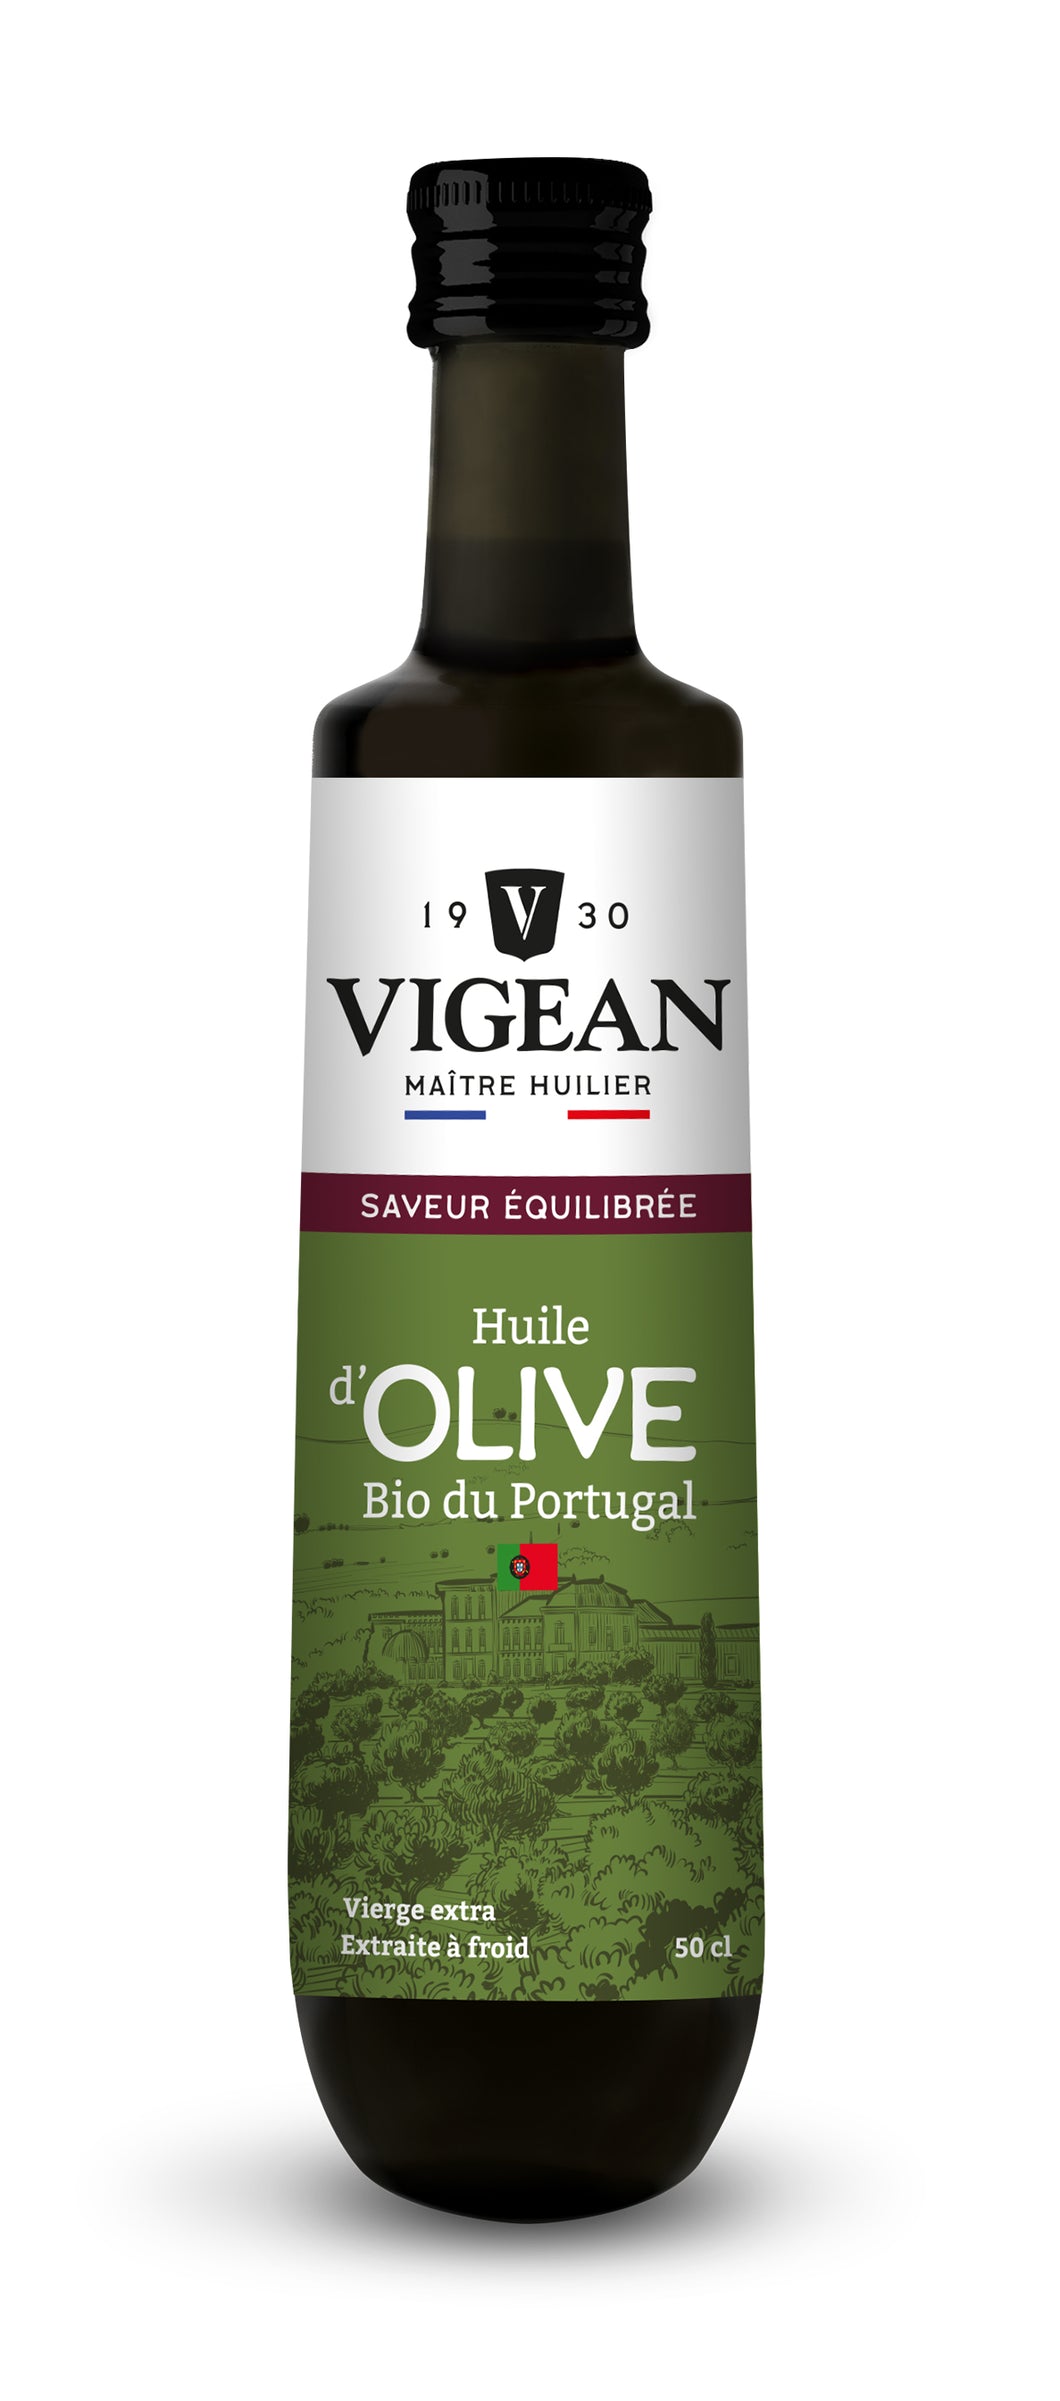 Huile d'olive fruitée (Portugal) - 50cl